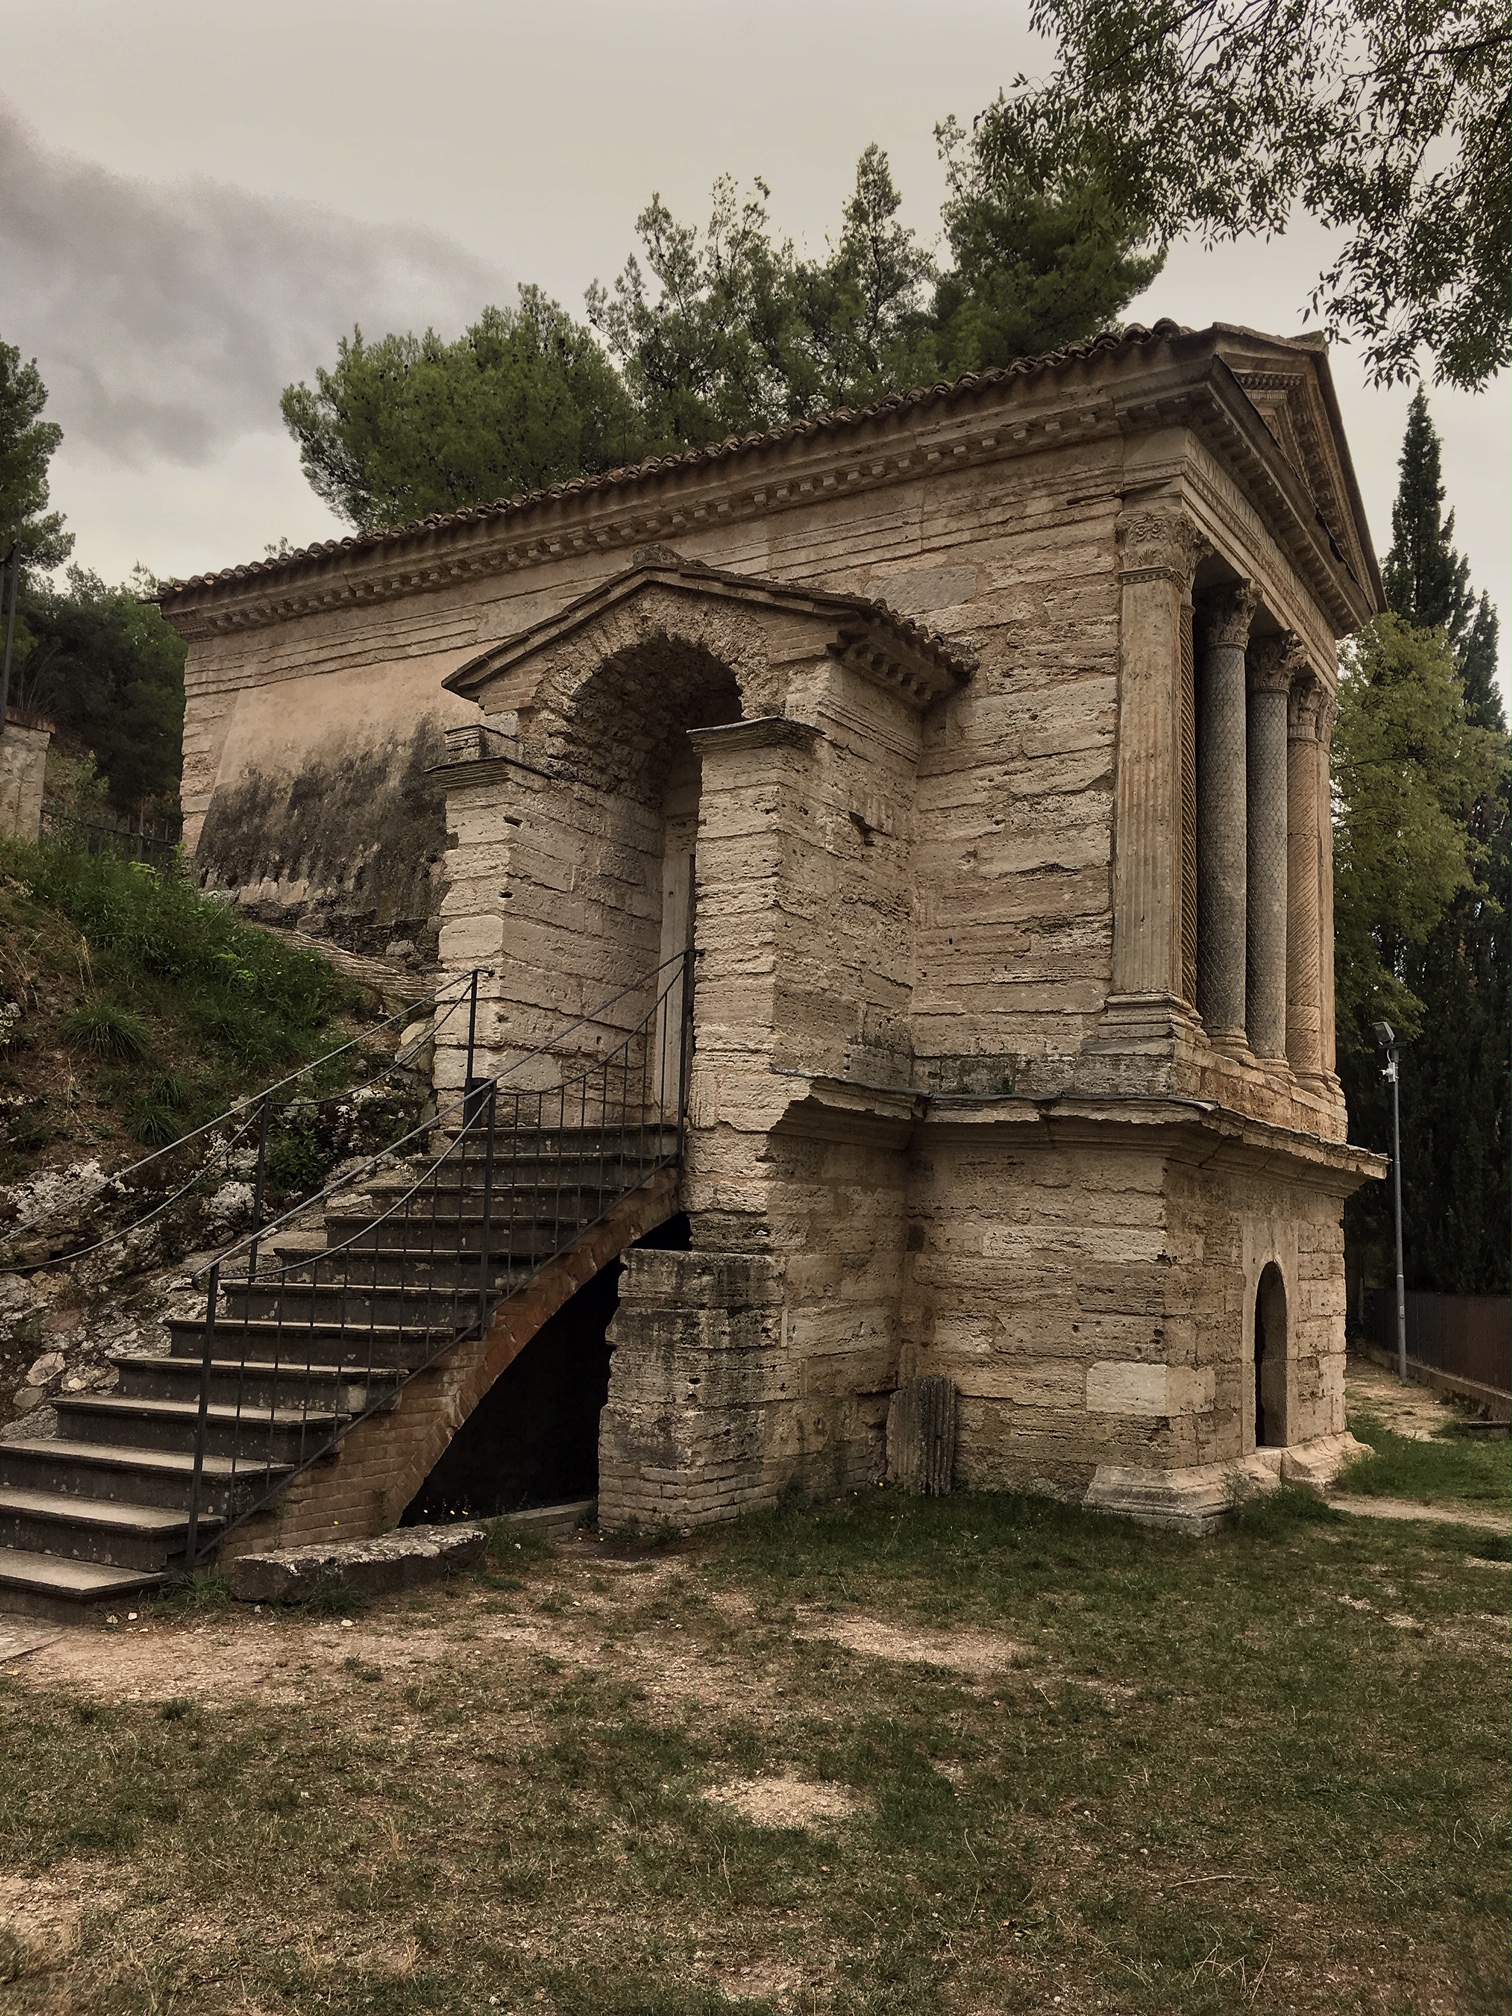 Tempietto sul Clitunno - Umbria